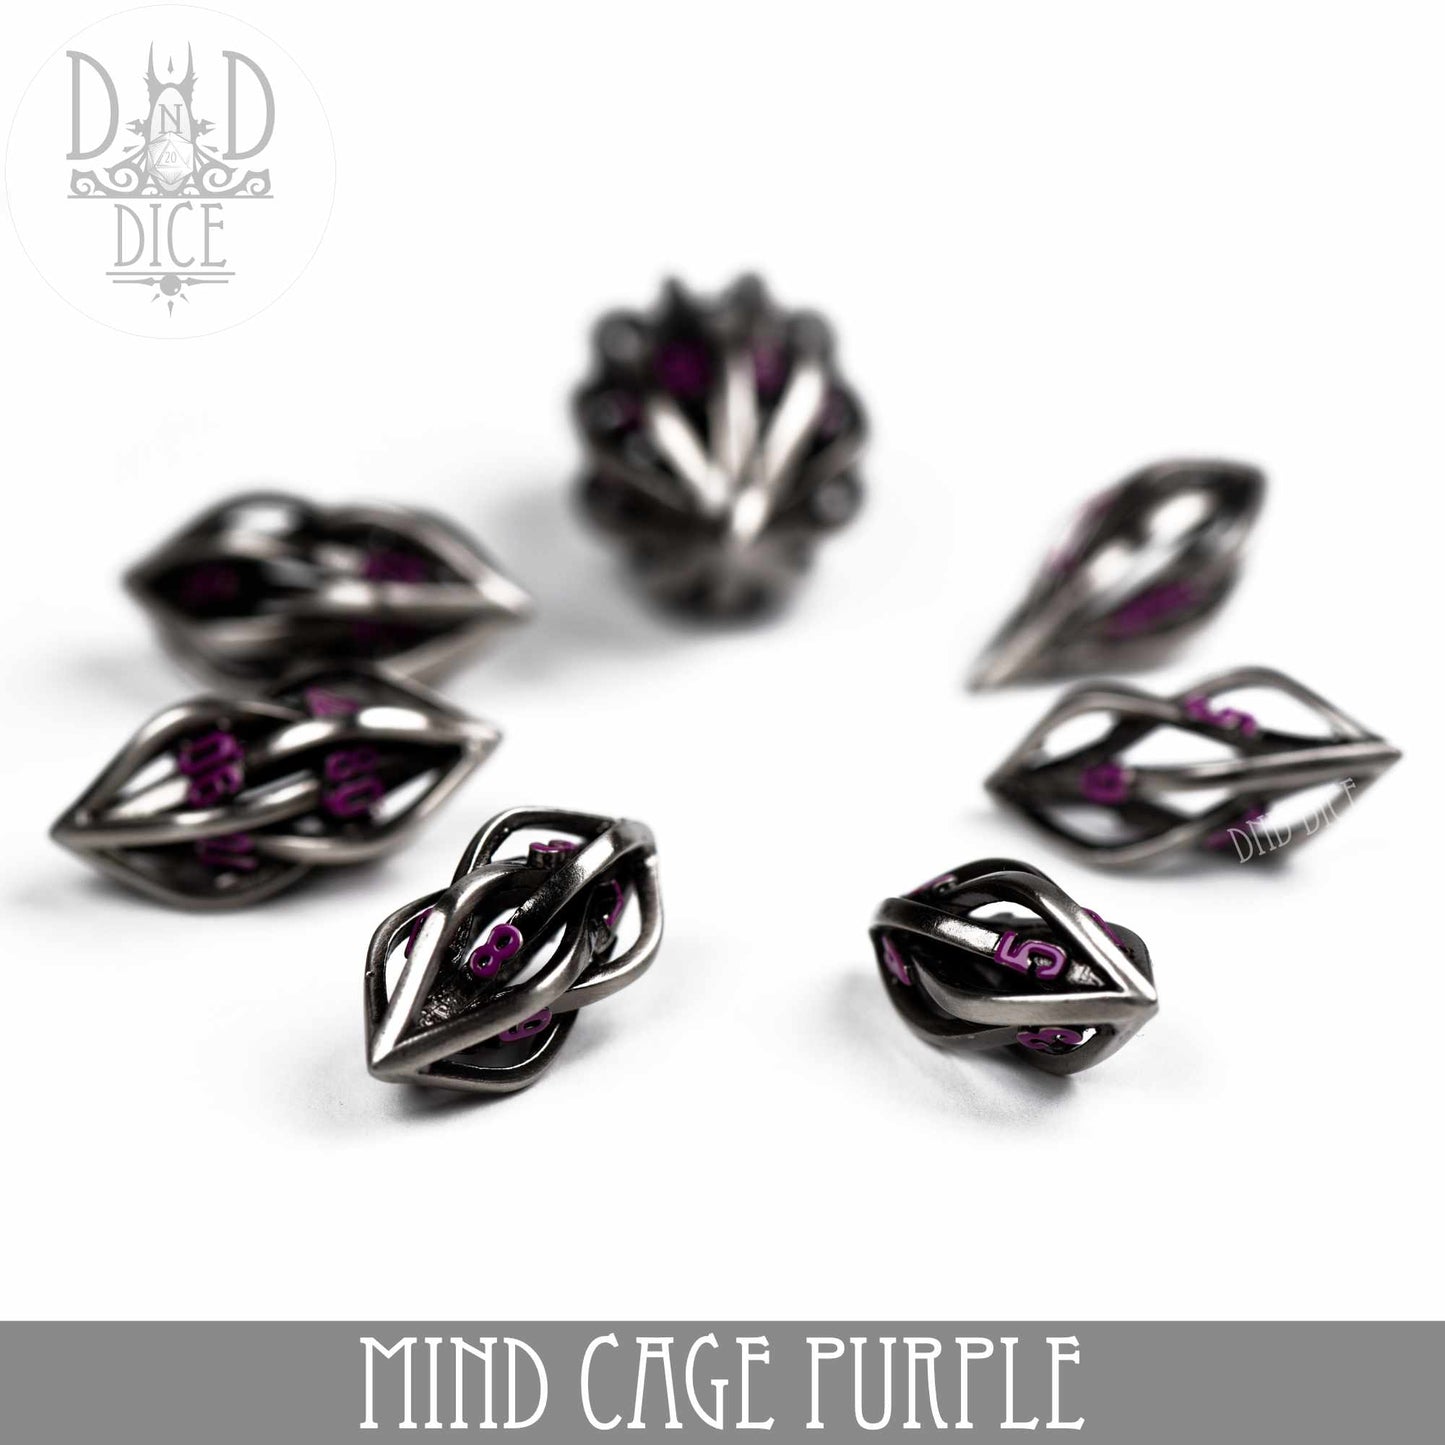 Mind Cage Purple - Jeu de dés en métal (coffret cadeau)